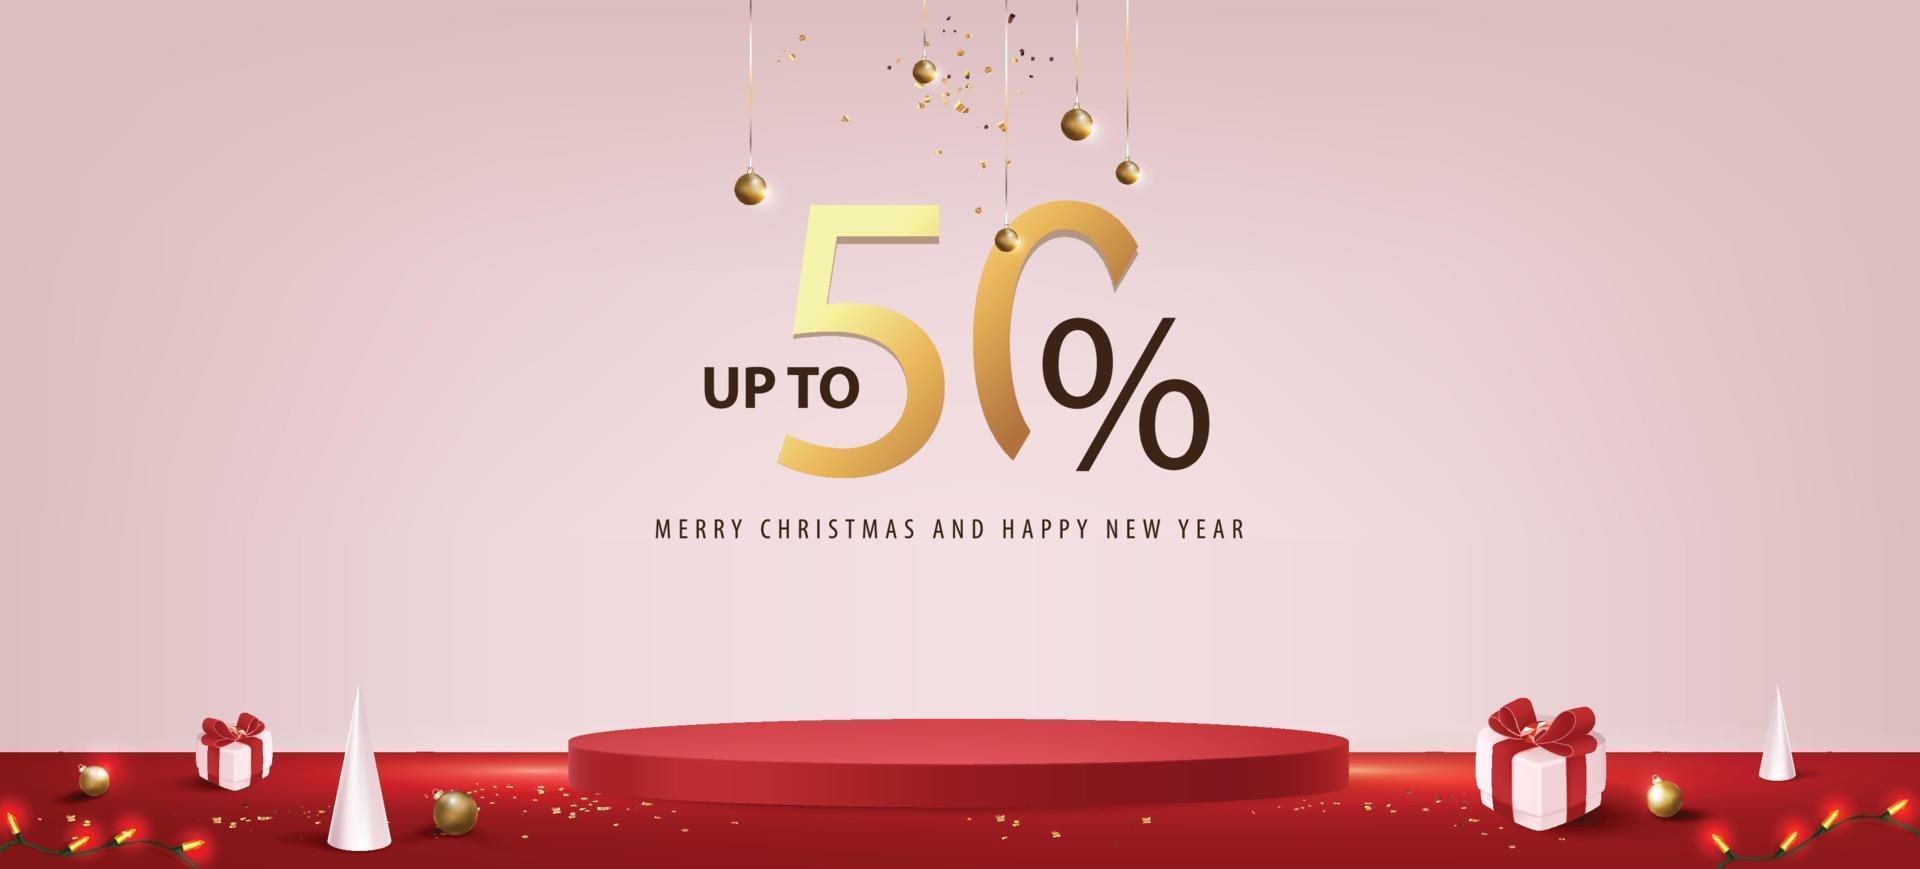 banner de promoção de venda de feliz natal com exibição de produto e decoração festiva vetor